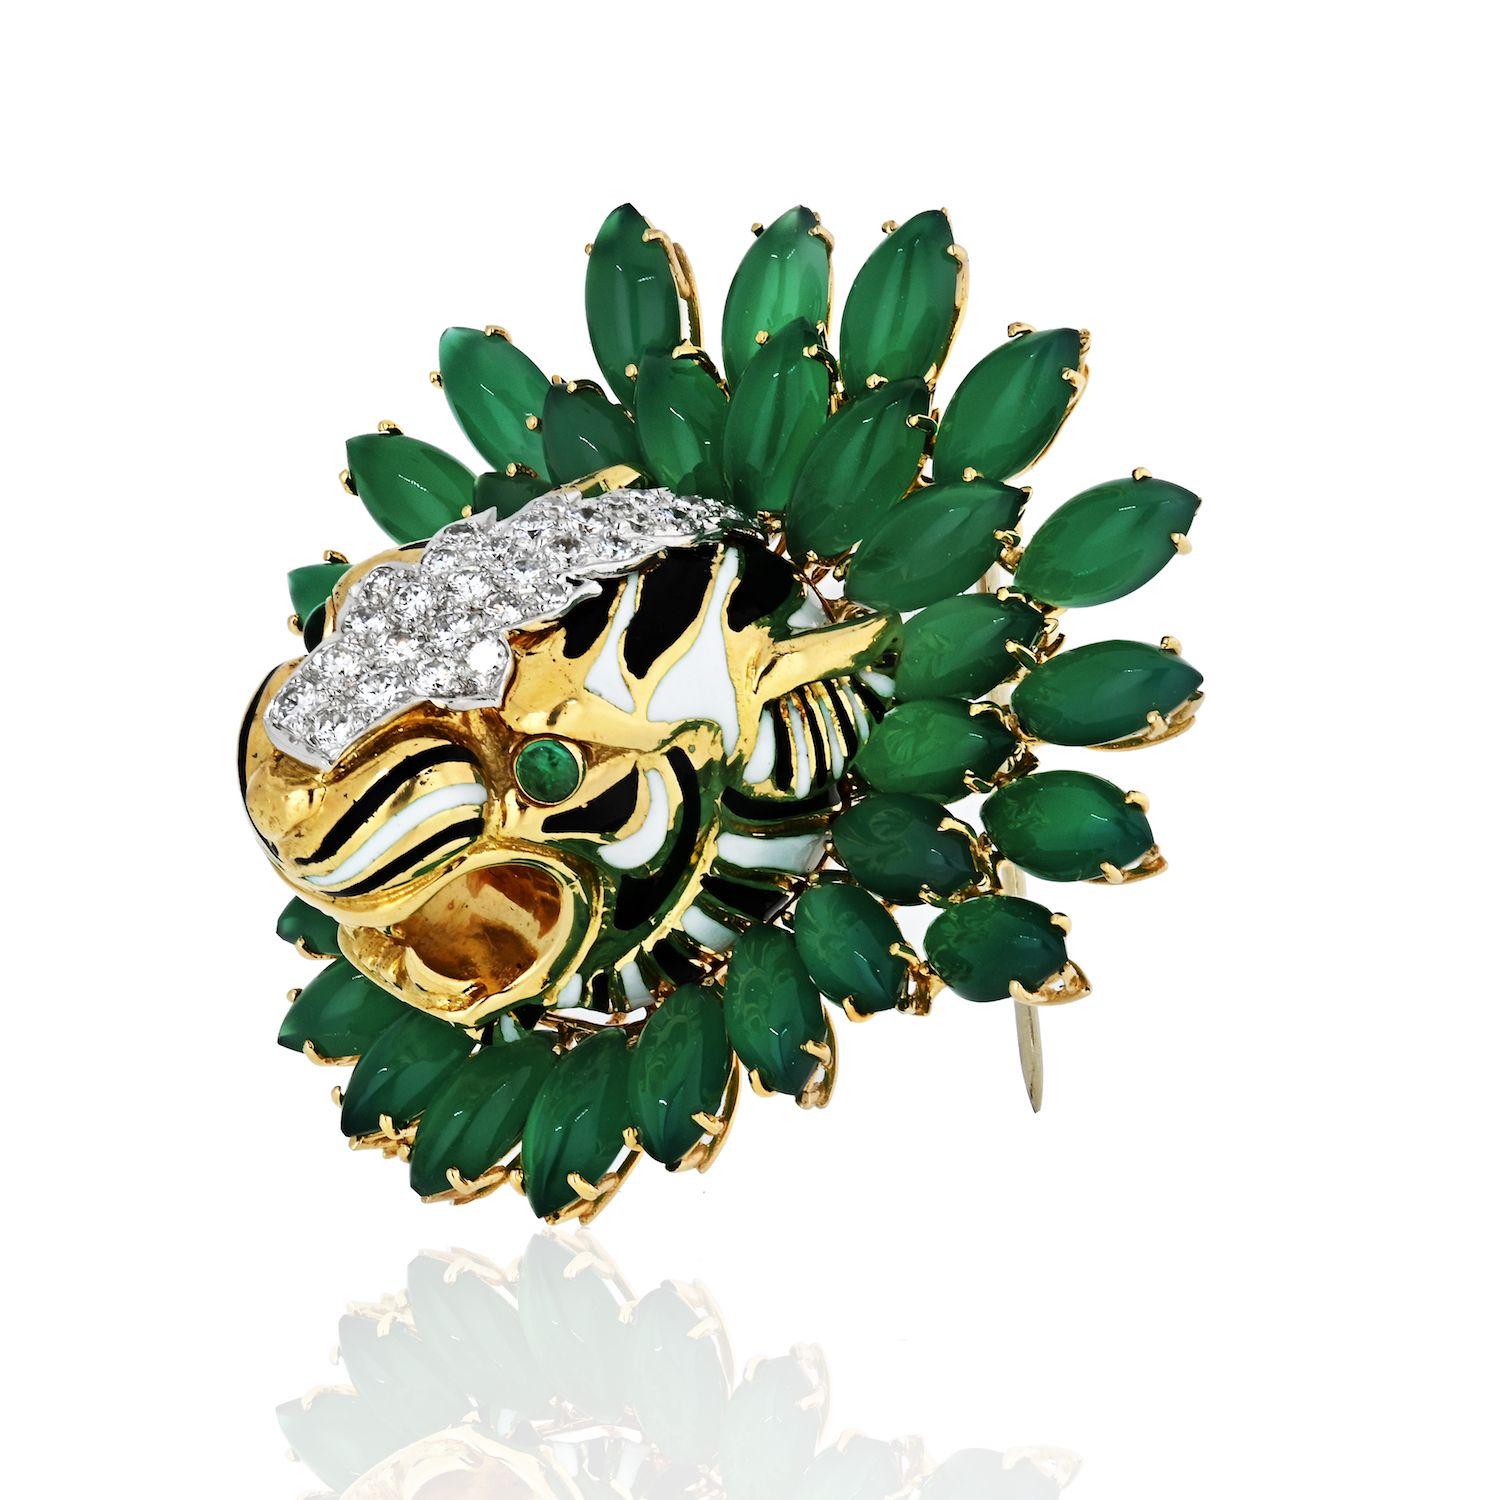 Superbe broche en forme de tête de tigre créée par David Webb, composée d'onyx vert marquise, d'émeraudes cabochon, d'environ 0,99 carats de diamants taillés en brillant, le tout serti dans de l'or jaune 18 carats et du platine.

L :